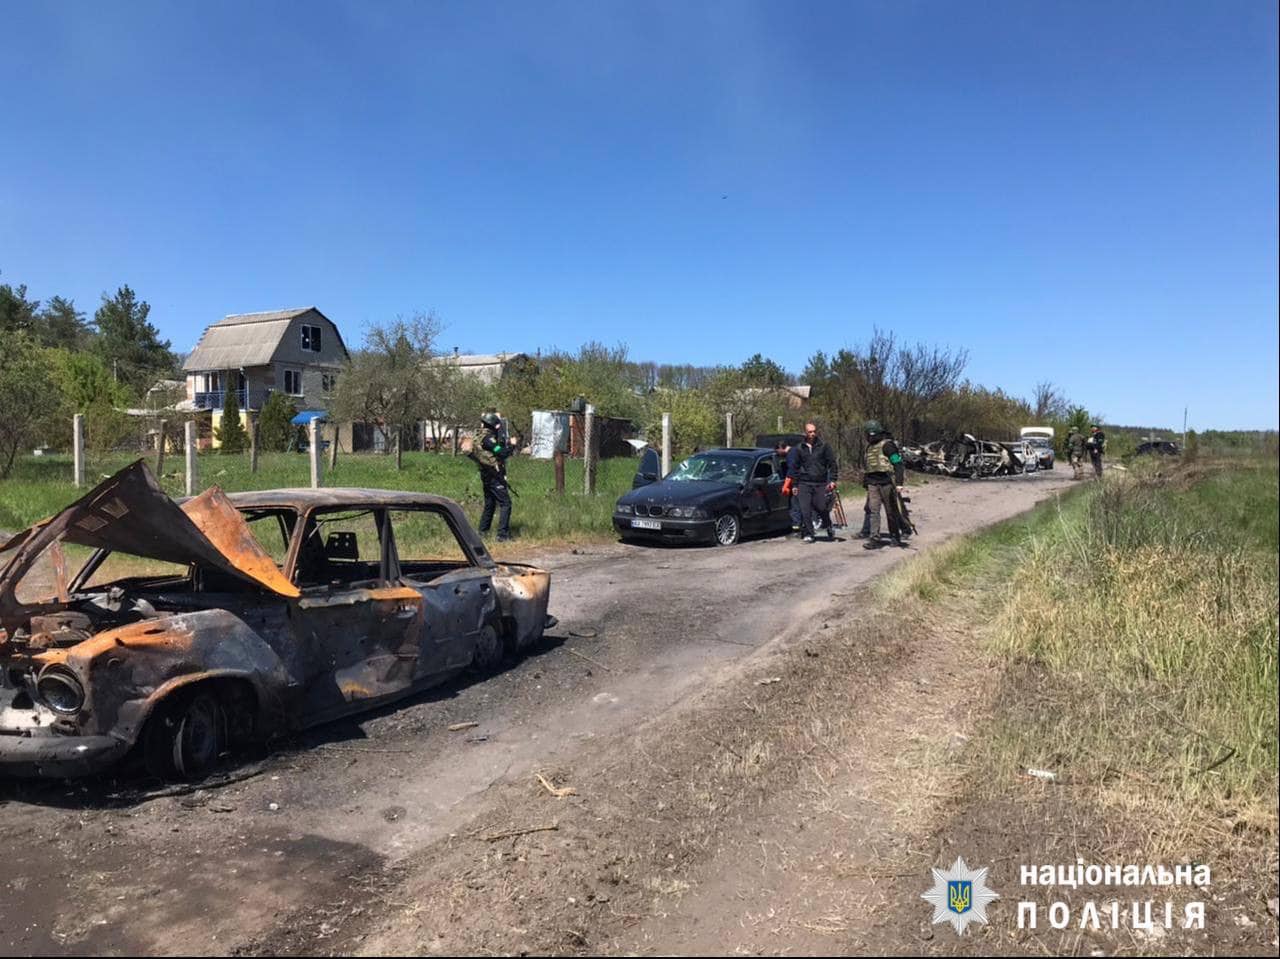 13-летняя девочка, которую искали родные, вероятно, сгорела в автомобиле под Старым Салтовом